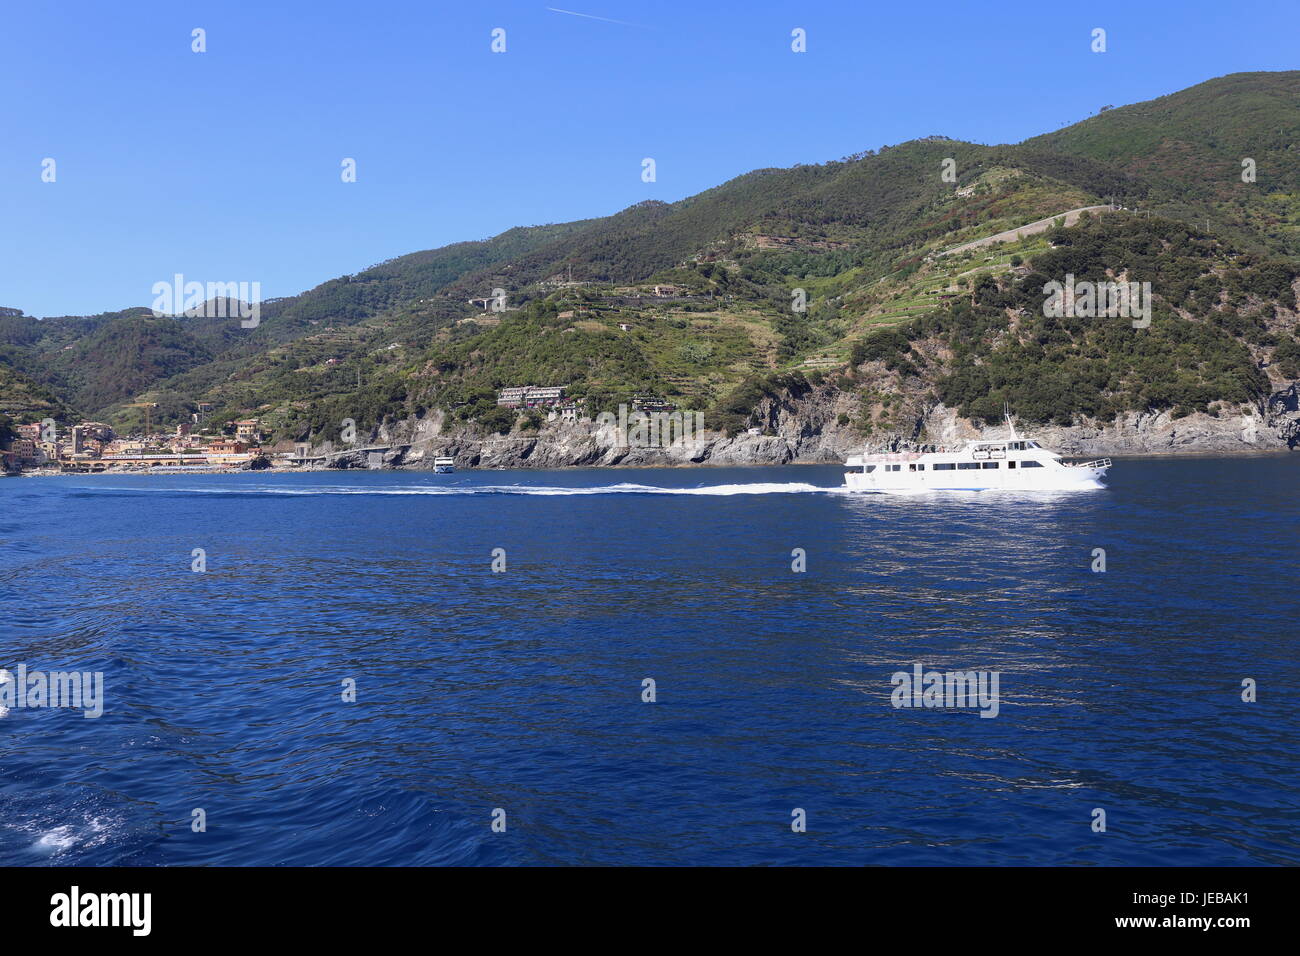 Imbarcazione turistica lasciando Monterosso e che si muove in basso lungo la costa tra i borghi delle Cinque Terre in Italia. Foto Stock